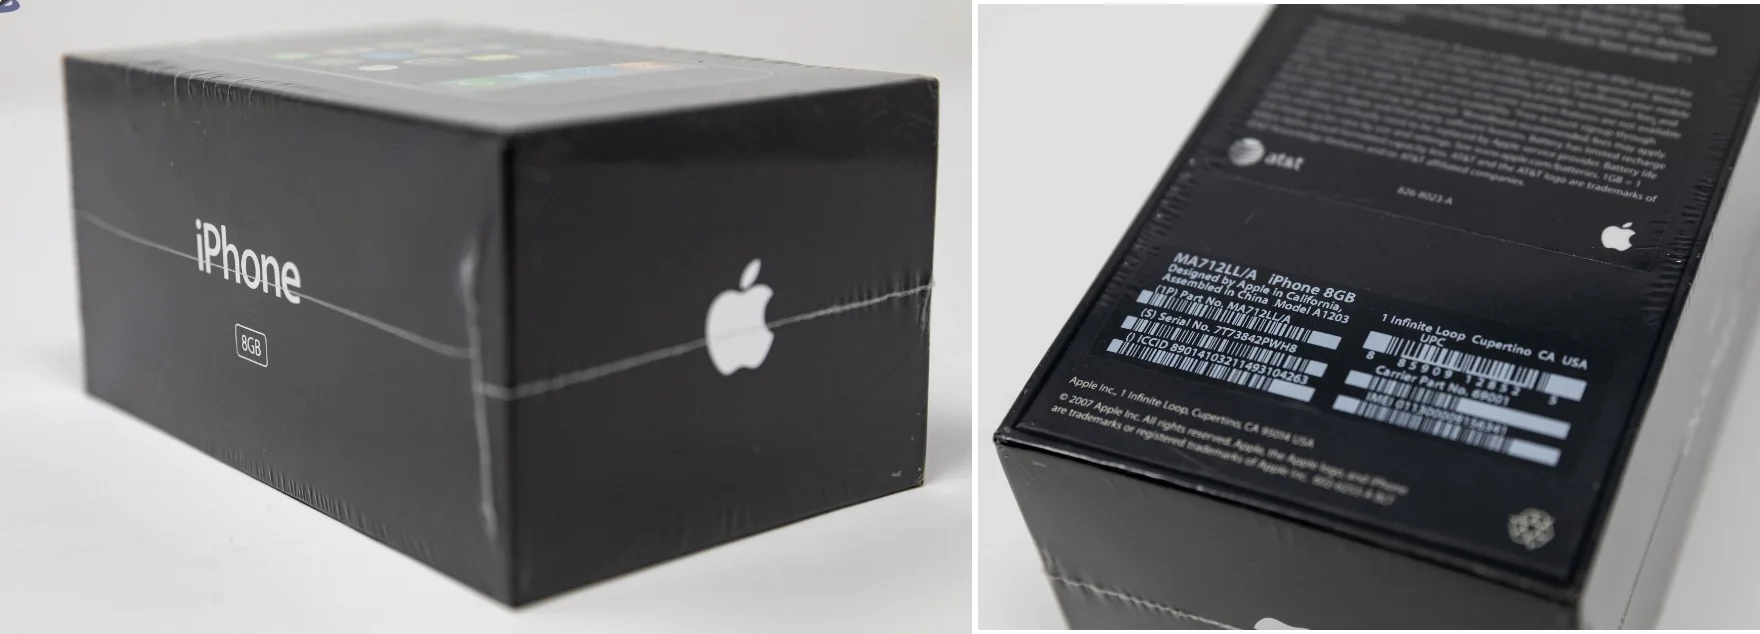 Запечатанный iPhone первого поколения ушёл с аукциона почти за 2,5 млн рублей - фото 1